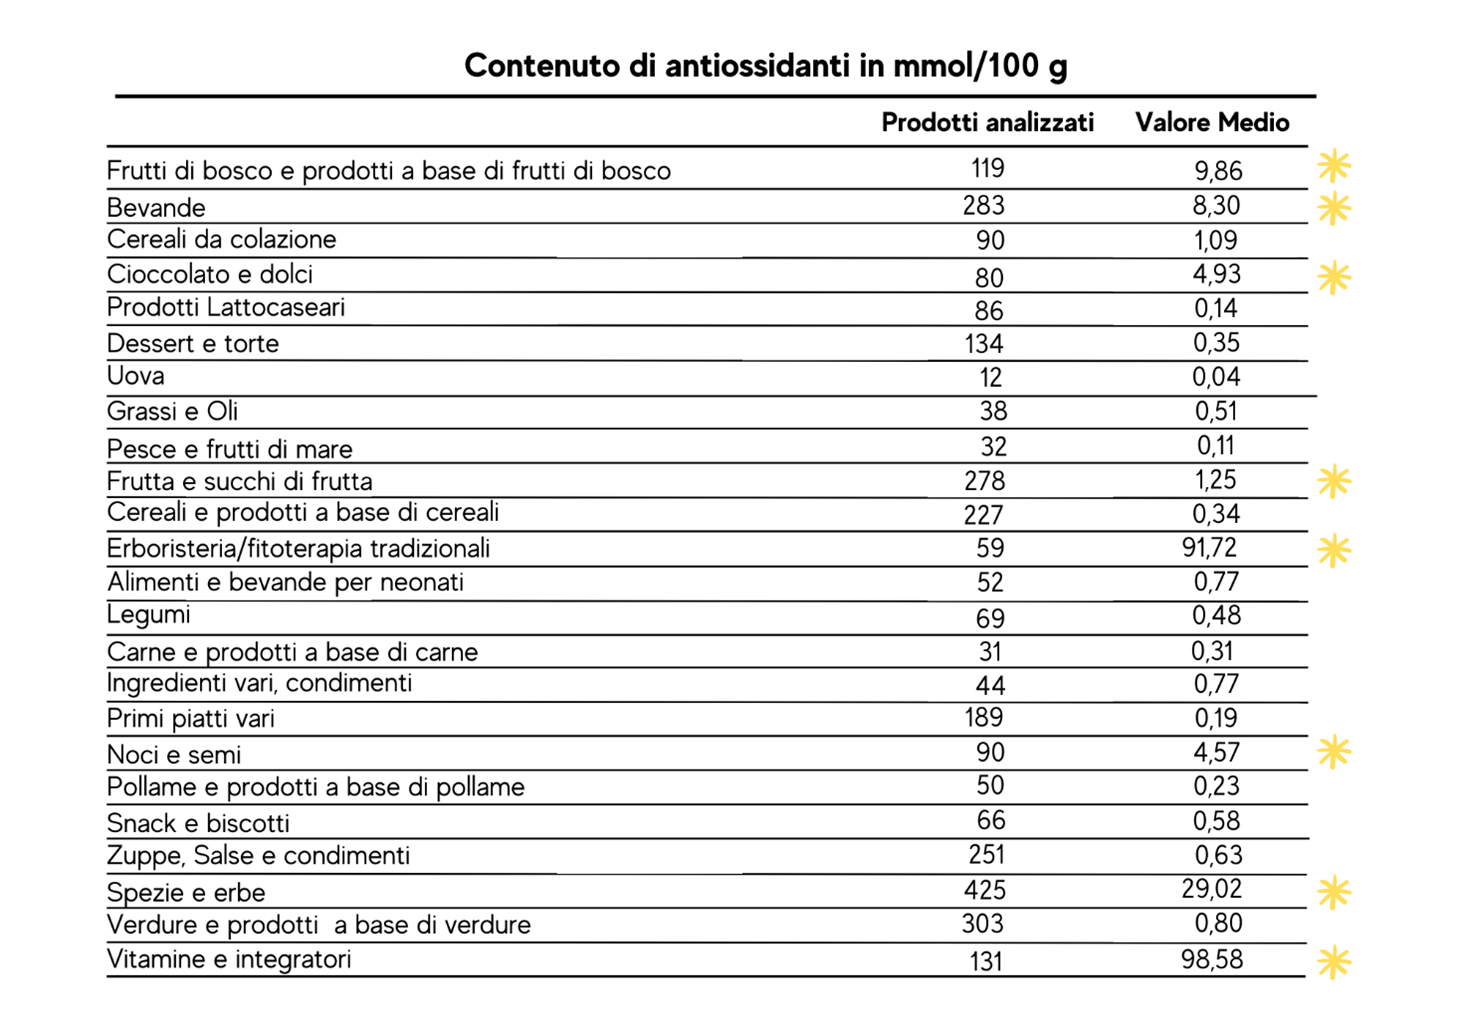 tabella del contenuto di antiossidanti in mmol/100g